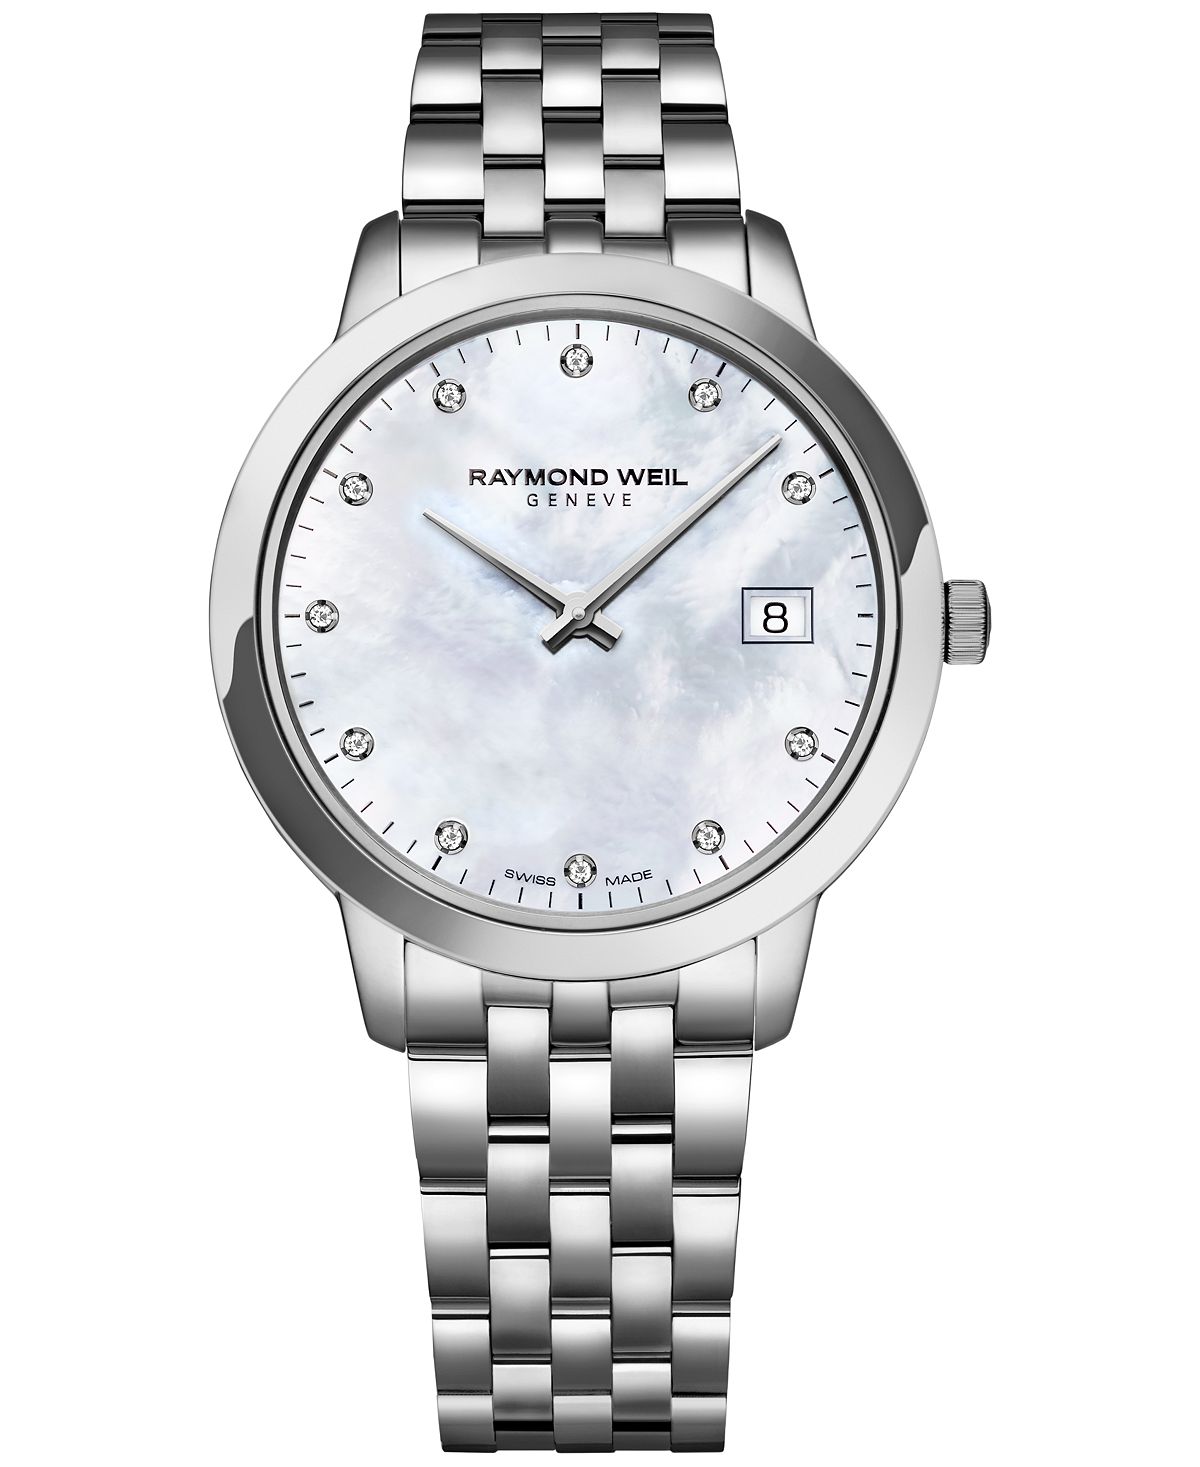 Женские швейцарские часы Toccata Diamond Accent из нержавеющей стали с браслетом 34 мм Raymond Weil, белый женские швейцарские часы ds action diamond accent из нержавеющей стали с браслетом 34 мм certina белый